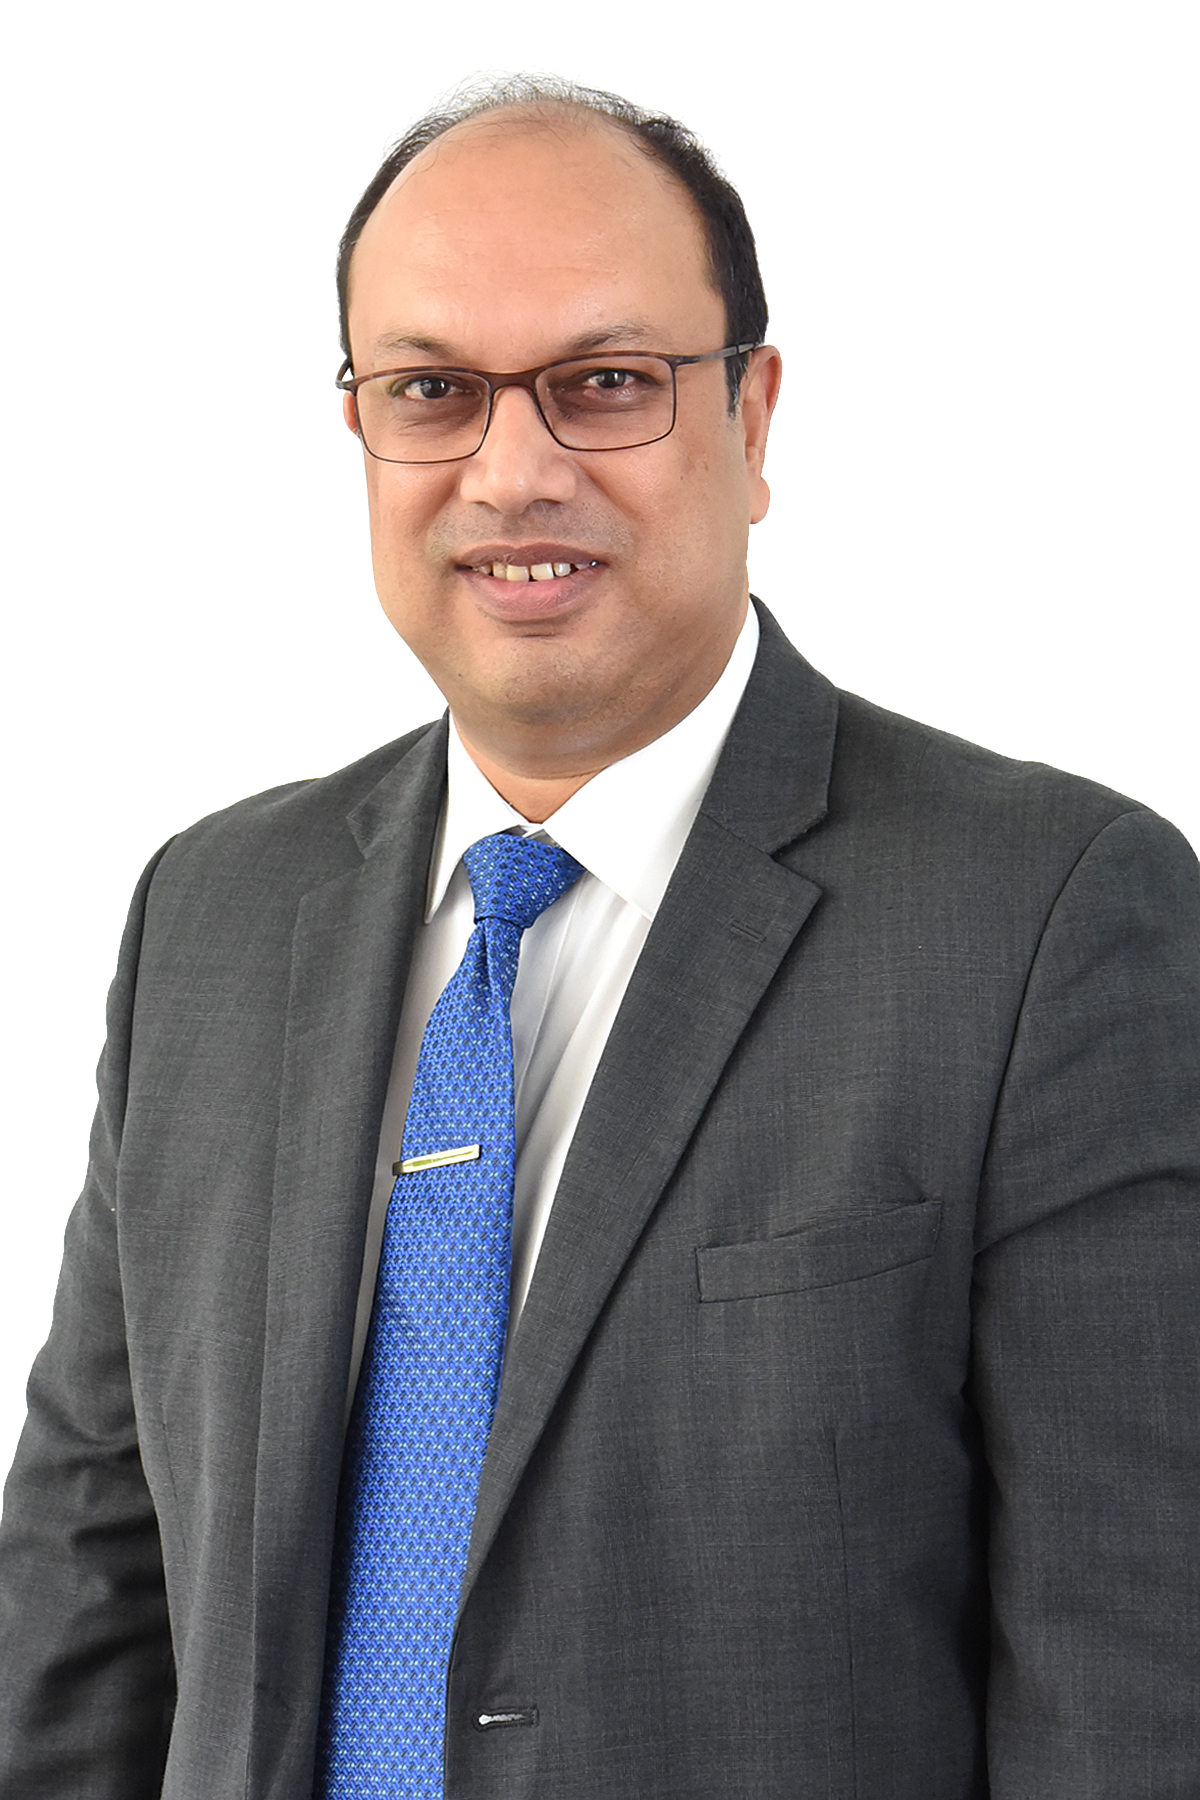 Vickram Jadhav, <span>Vice President - Sales, Vestas India</span>